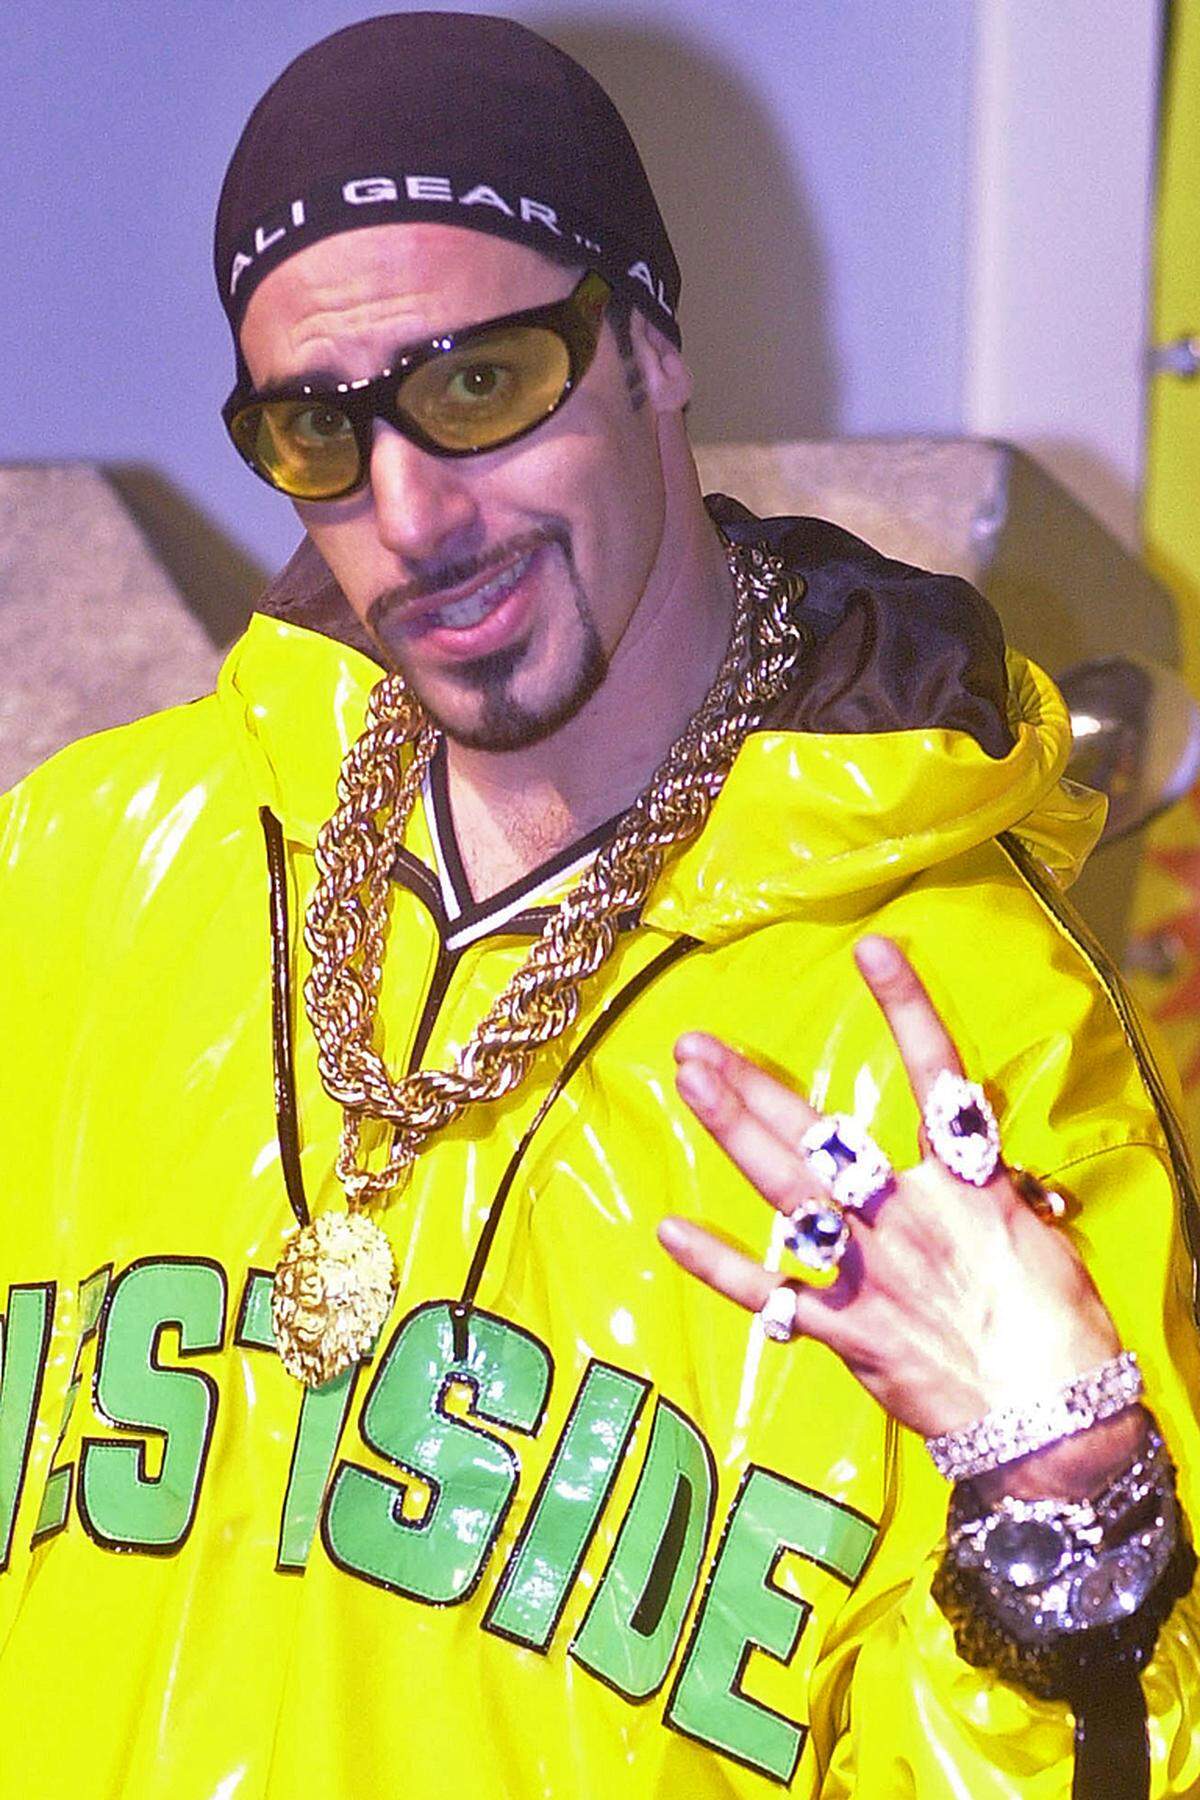 ... Ali G. Mit der 1996 erstmals in Erscheinung tretenden Kunstfigur karikierte Cohen einen gefährlichen Gangster-Rapper aus dem Londoner Vorort Staines. Ein Widerspruch in sich: Denn die Stadt hat seit jeher einen spießigen, kleinbürgerlichen Ruf.